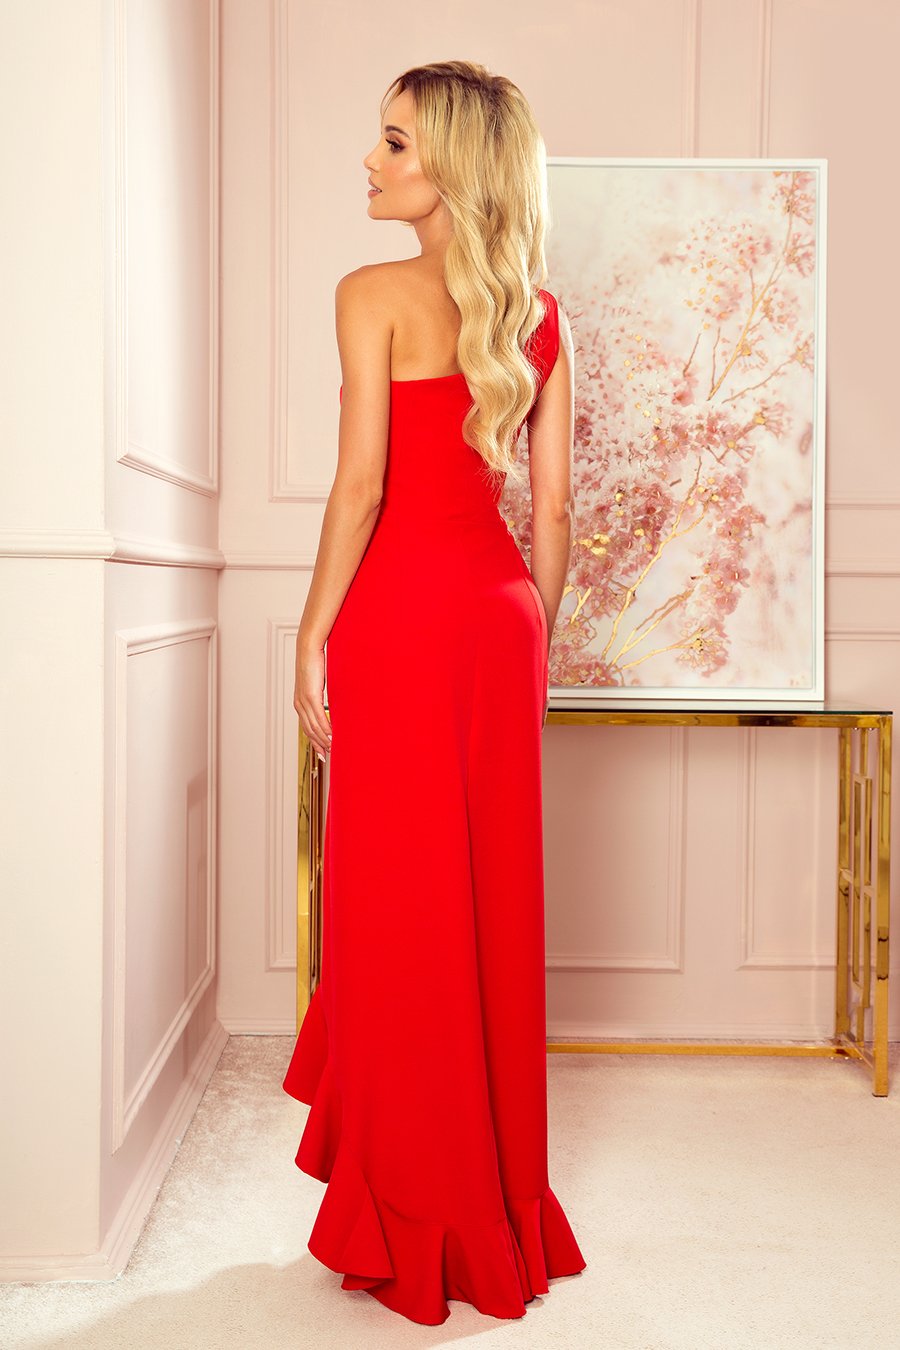 Γυναικείο φόρεμα Winona, Κόκκινο 4